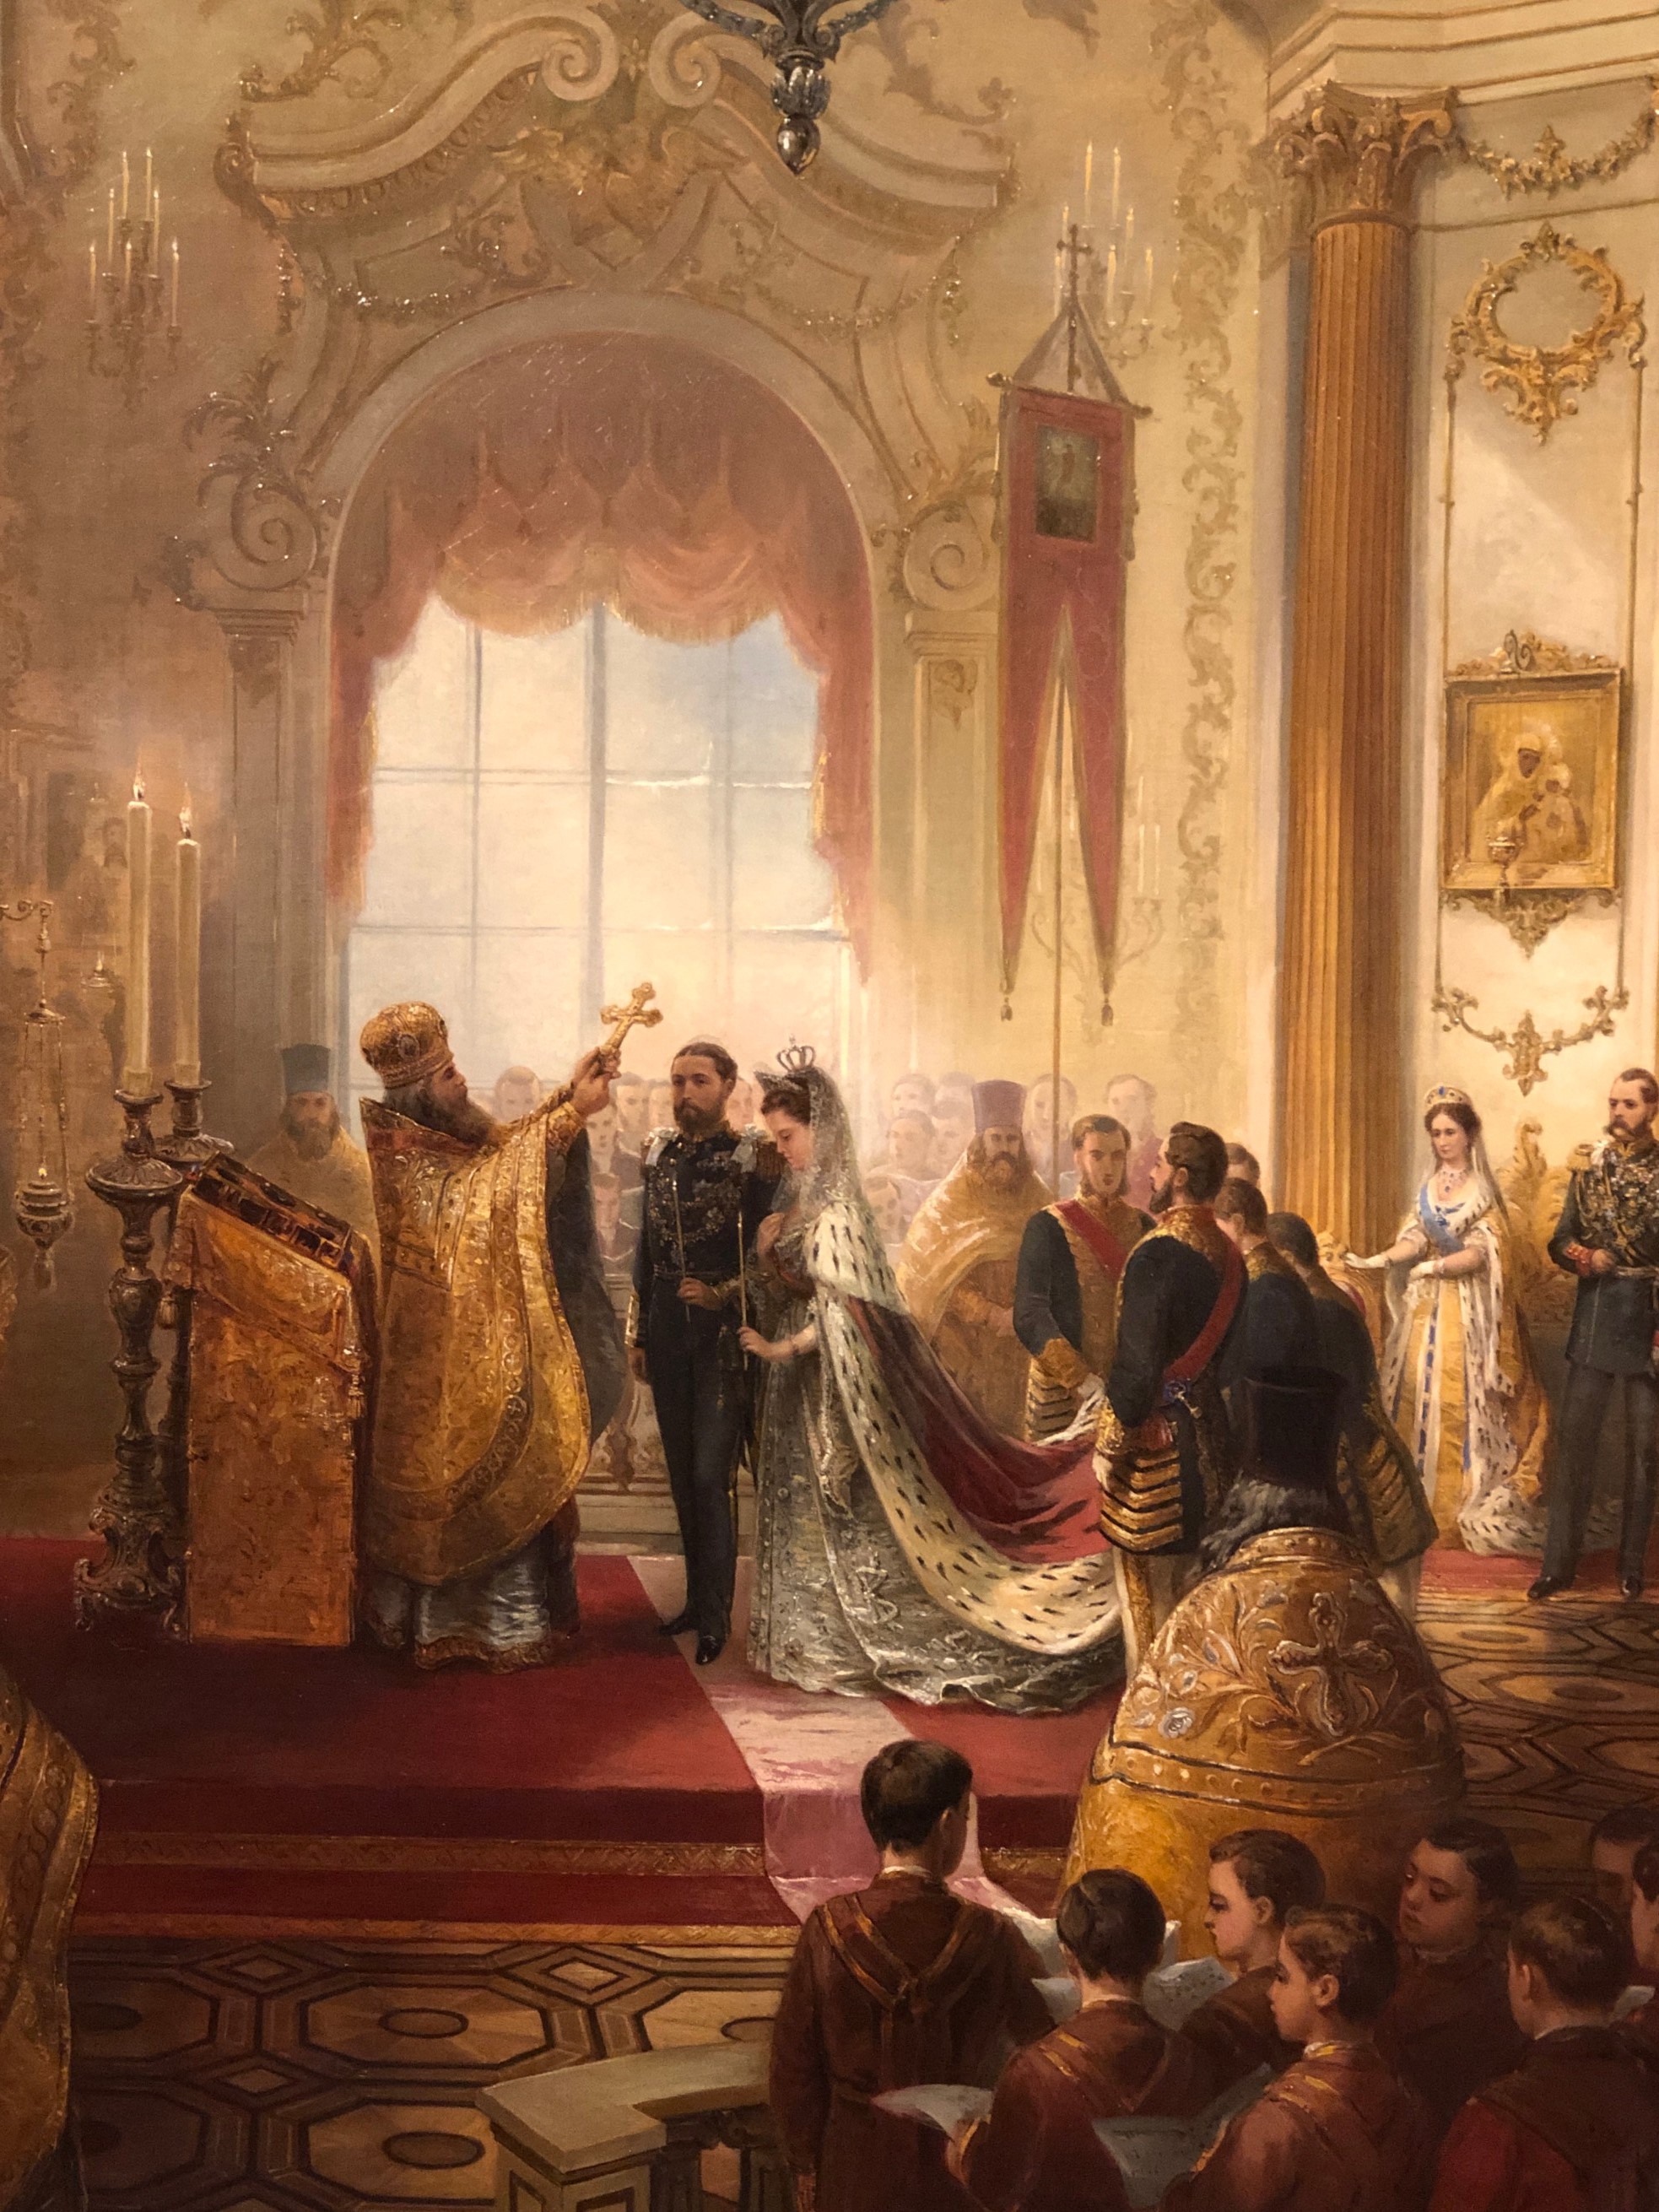 Russian & Ottoman Art at Buckingham Palace - Michael Backman Ltd